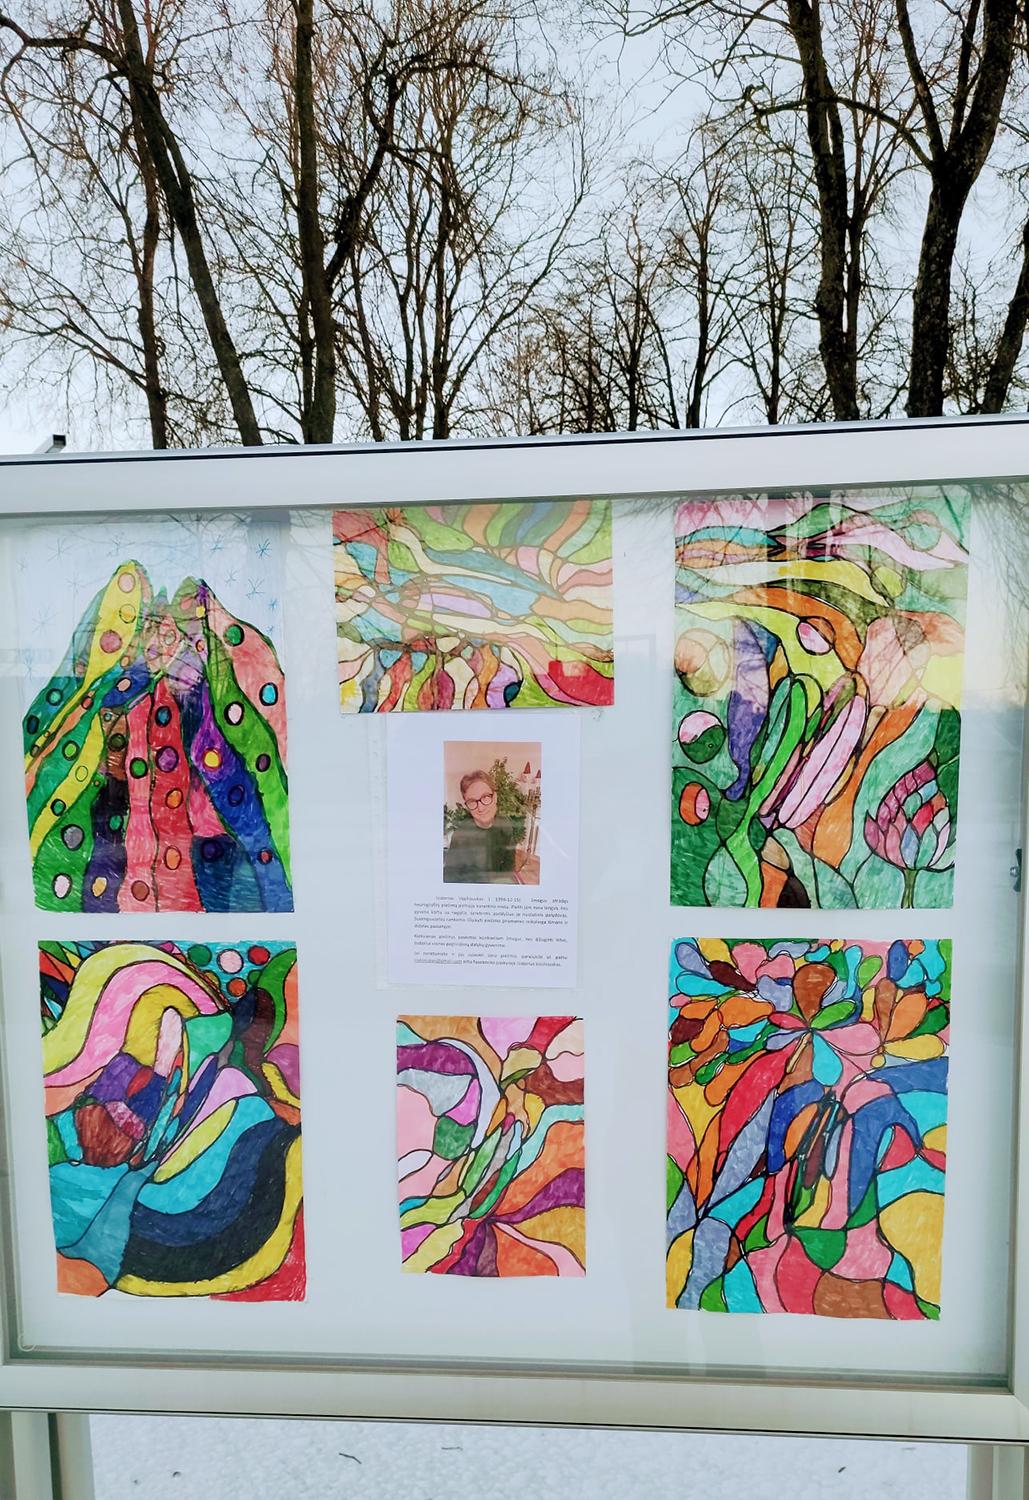 Lauko galerijoje – spalvinga ir jautri paroda / Kiekvienas piešinys skirtas konkrečiam žmogui.  Organizatorių nuotr.